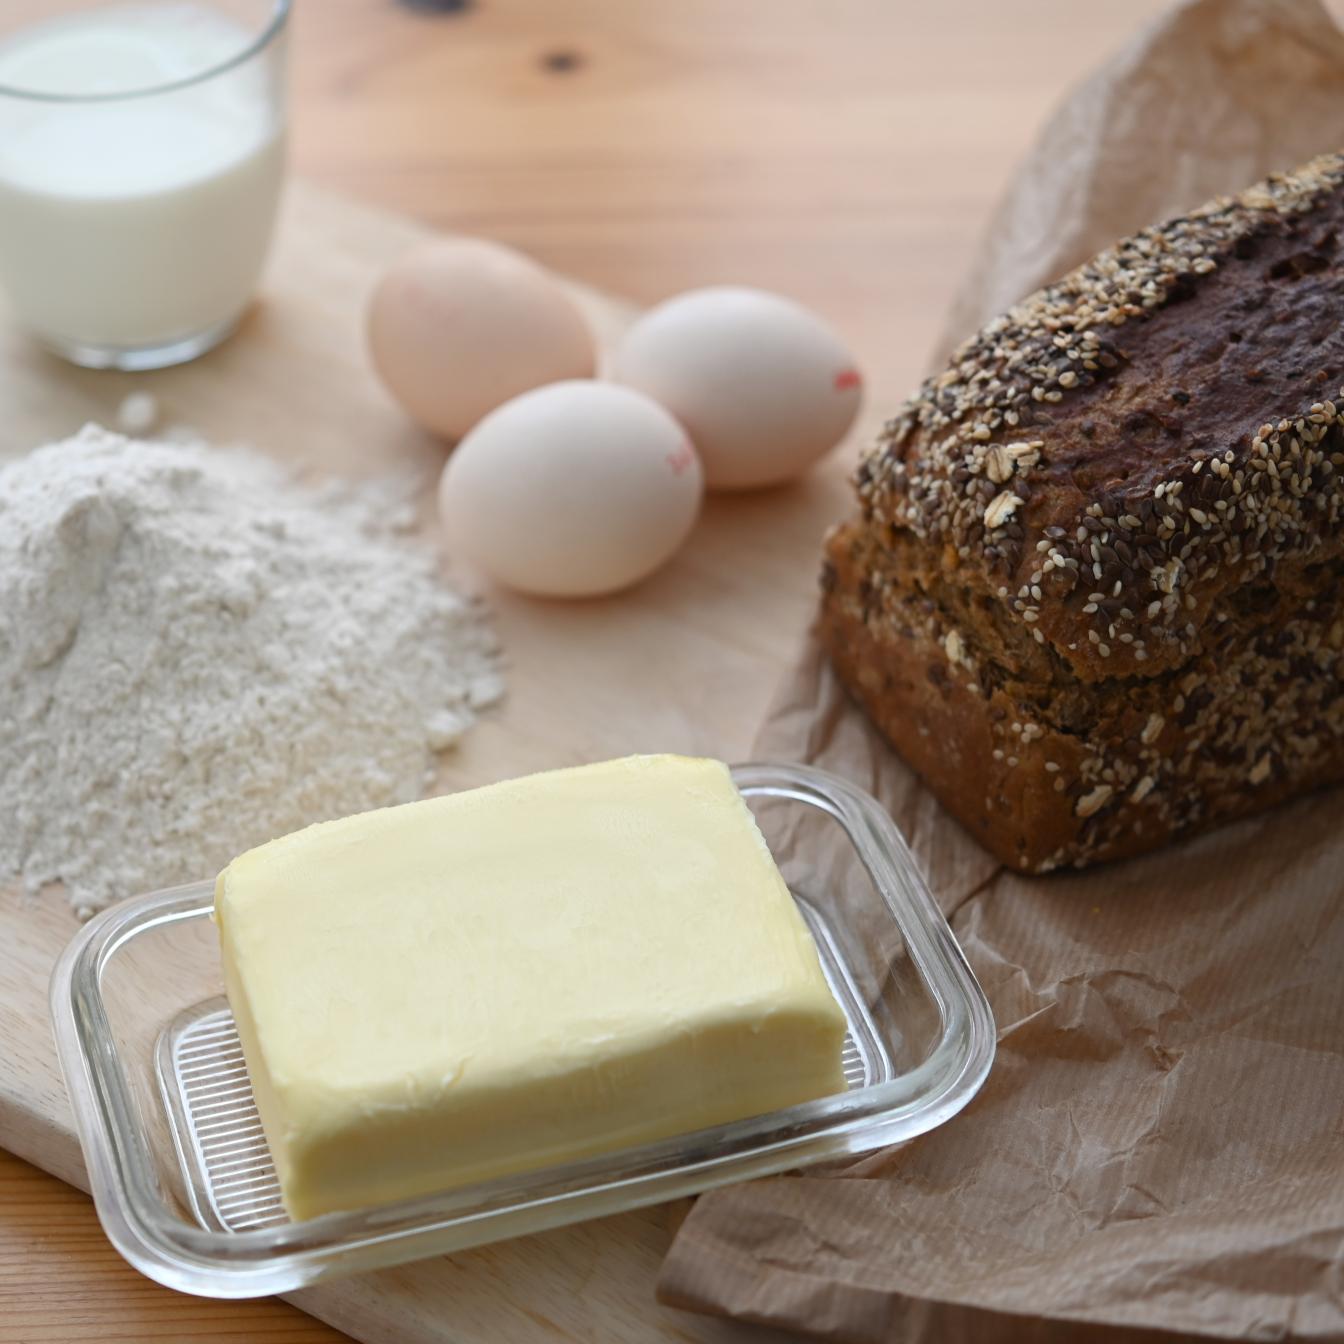 Lebensmittel wie Butter und Mehl wurden deutlich teurer